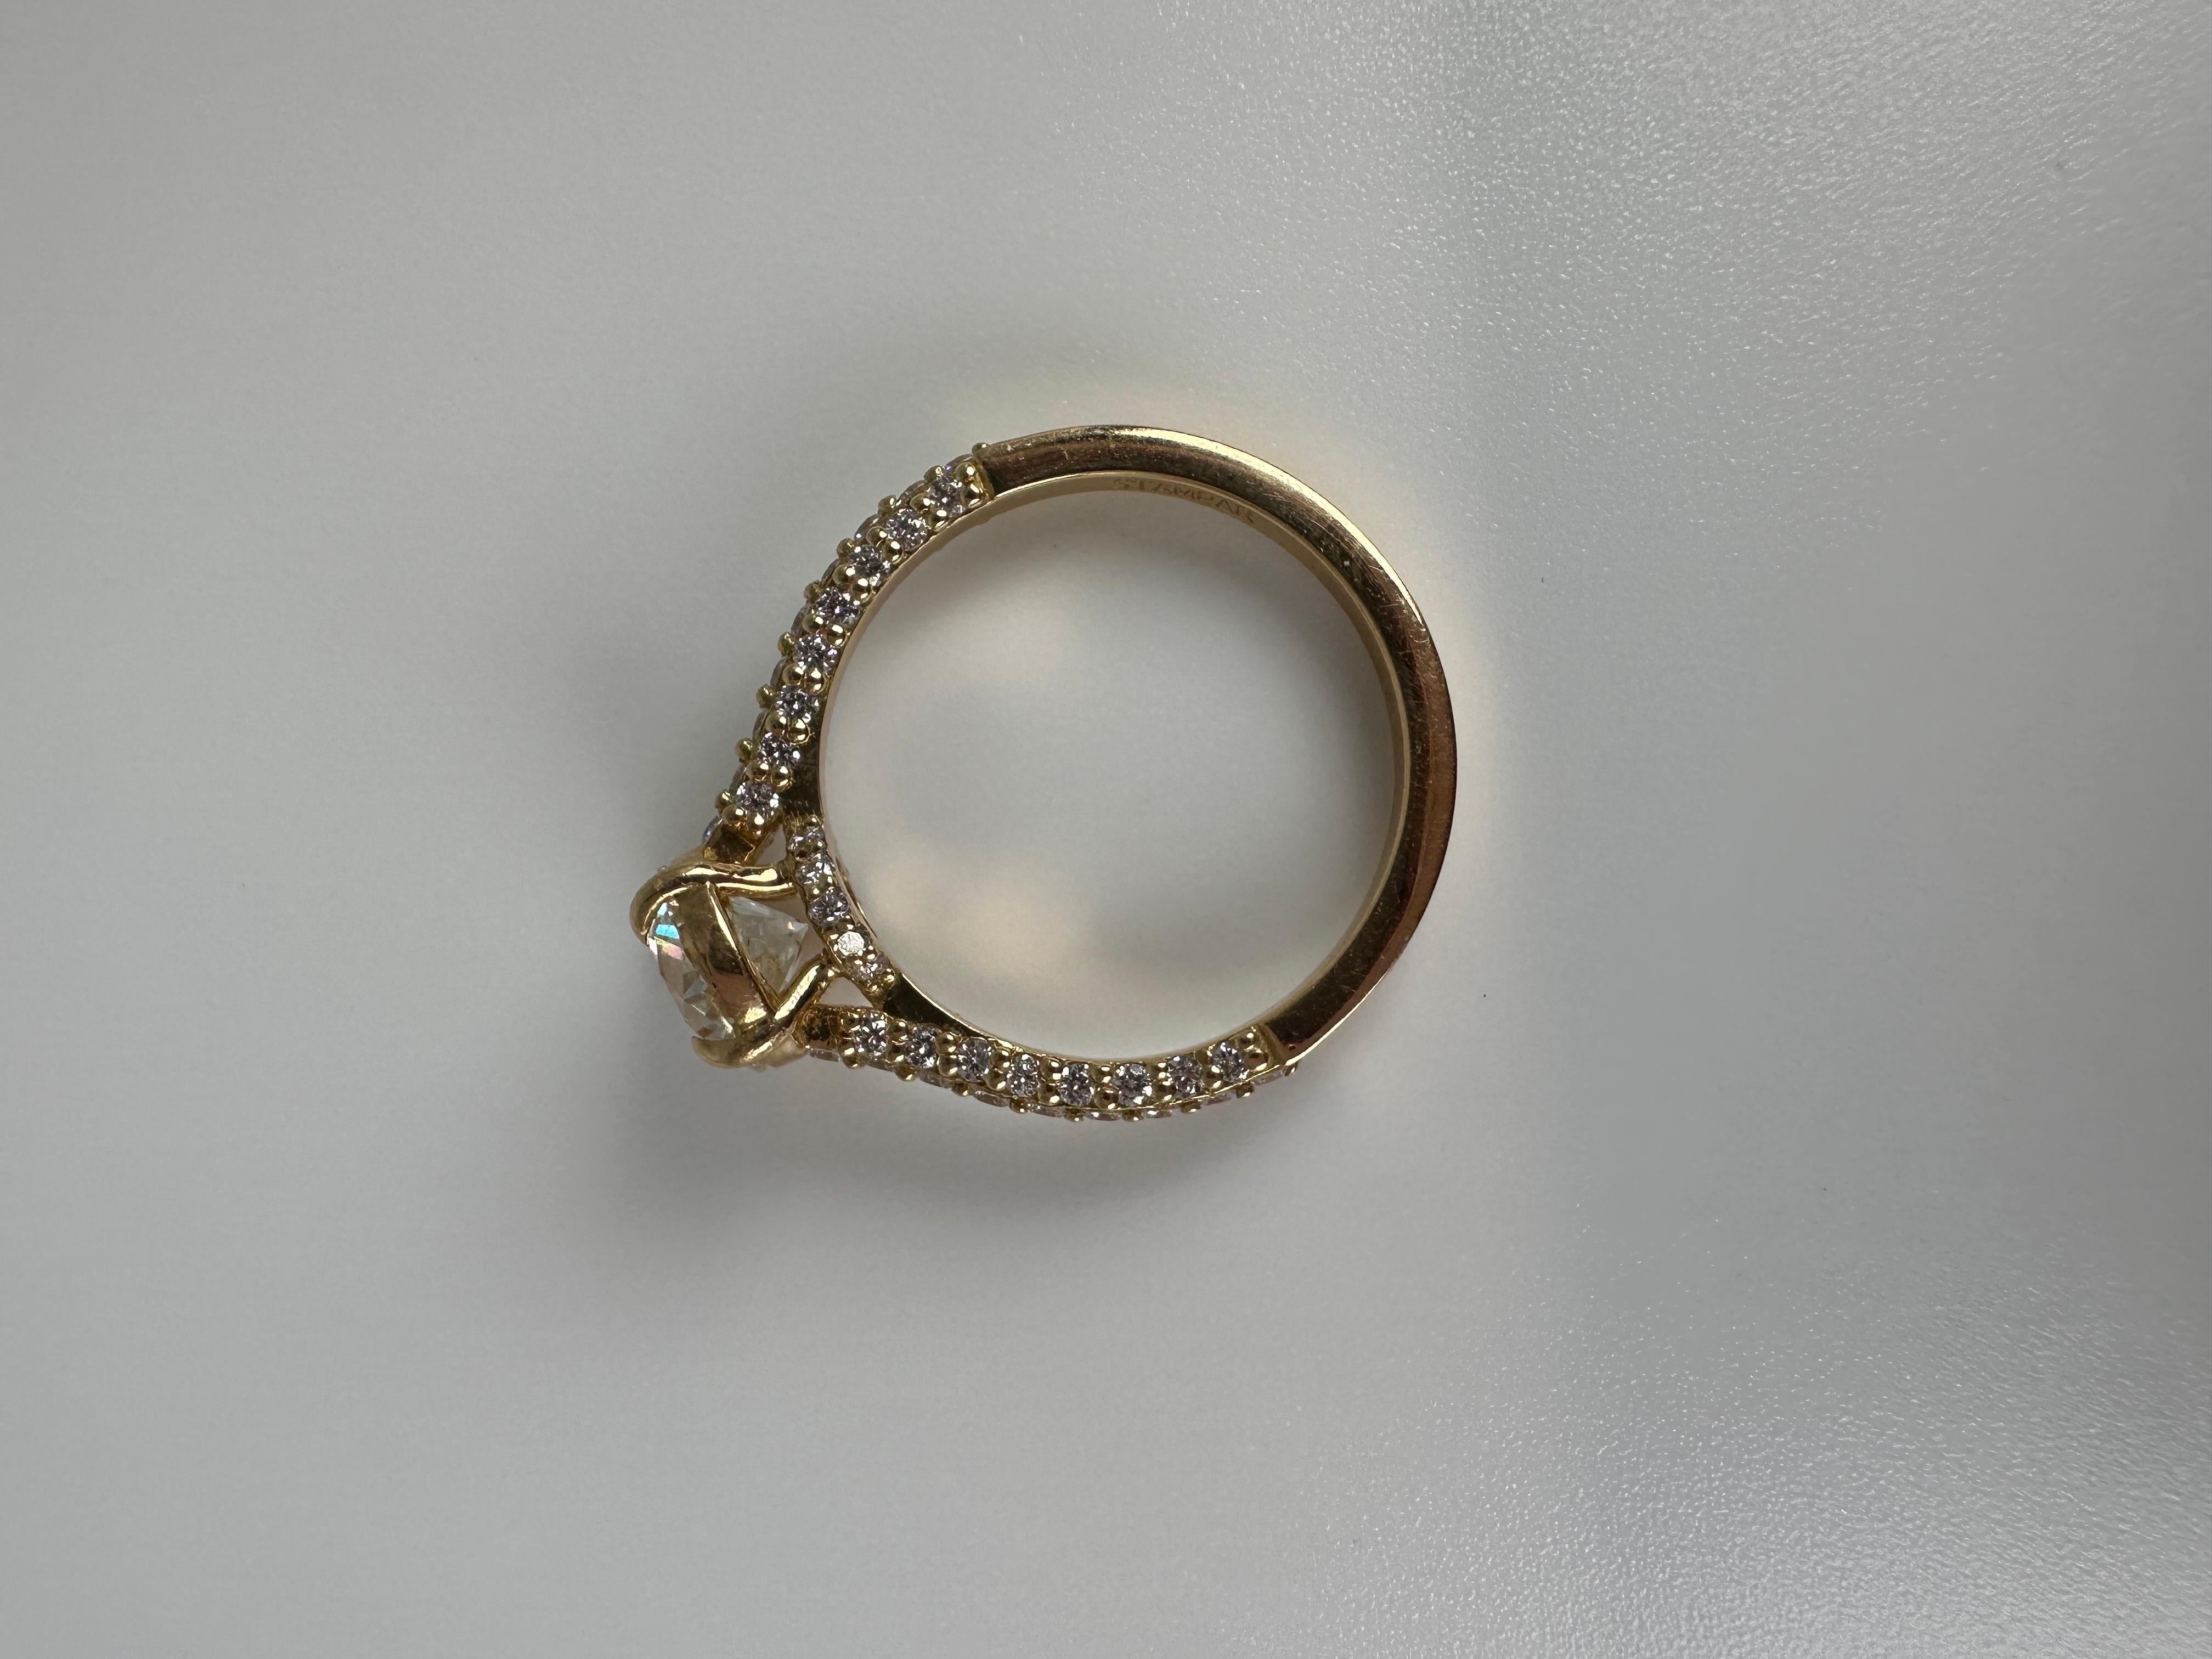 Atemberaubende Verlobungsring mit einem 0,40ct Zentrum SI2 Klarheit und H Farbe, Seite Diamanten mit einem Gewicht von 0,20ct in 14KT Gelbgold, schöne klassische Ring!

GOLD: 14KT Gold
NATÜRLICHE(R) DIAMANT(E)
Klarheit/Farbe: